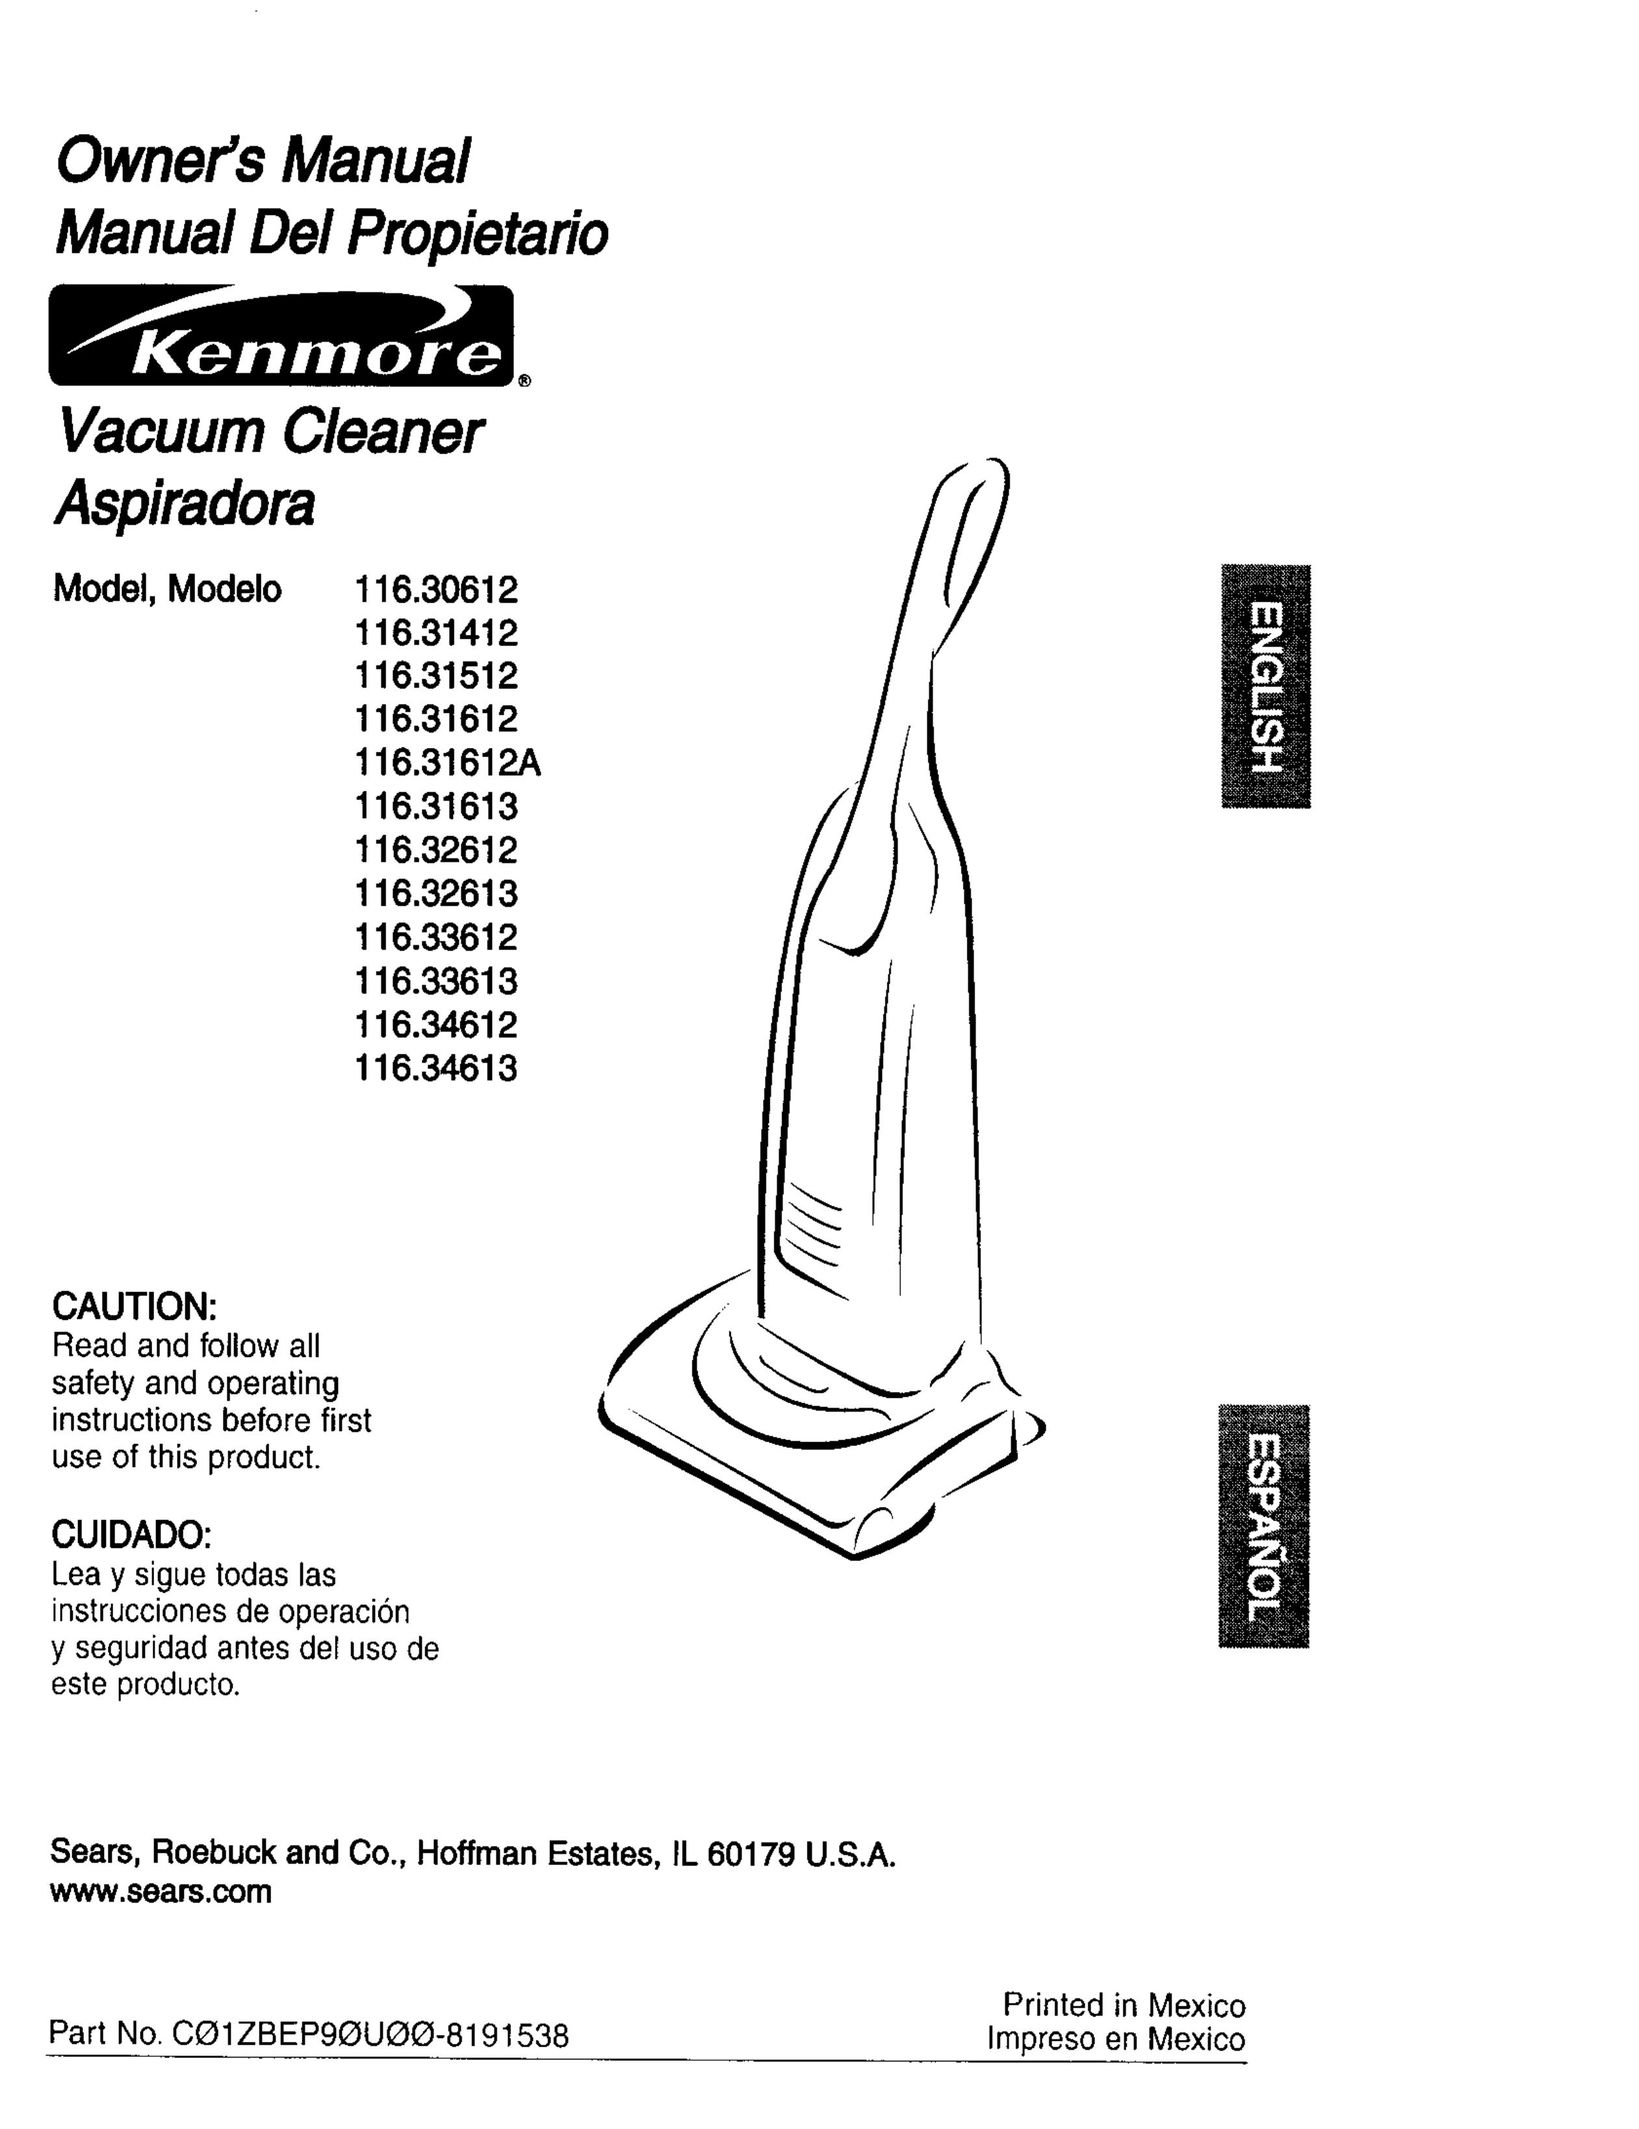 Kenmore 116.31612A Vacuum Cleaner User Manual